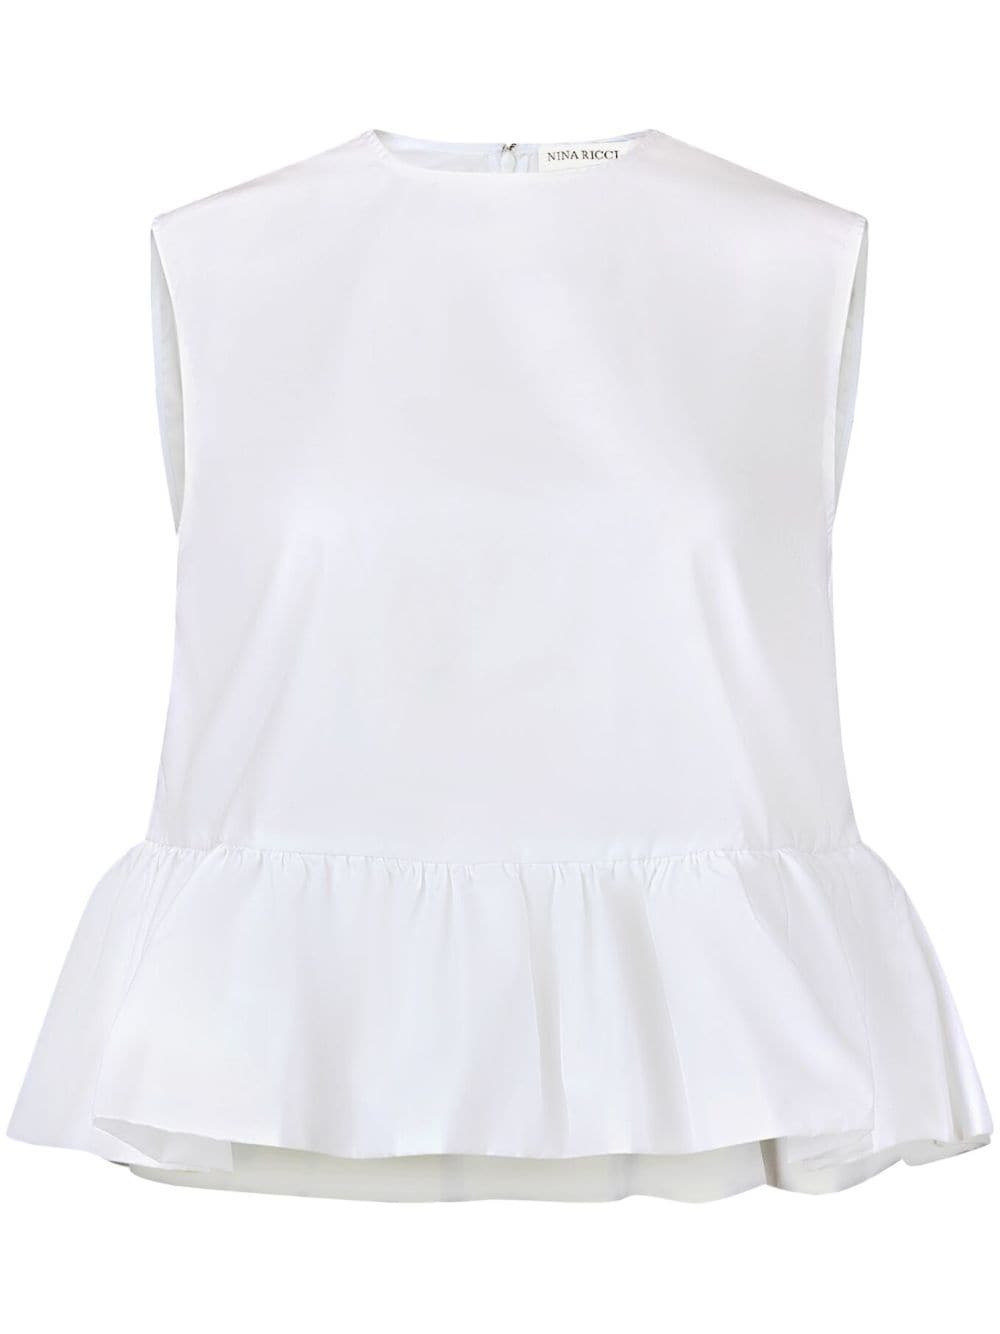 Nina Ricci bow-detail peplum sleeveless cotton top - White von Nina Ricci